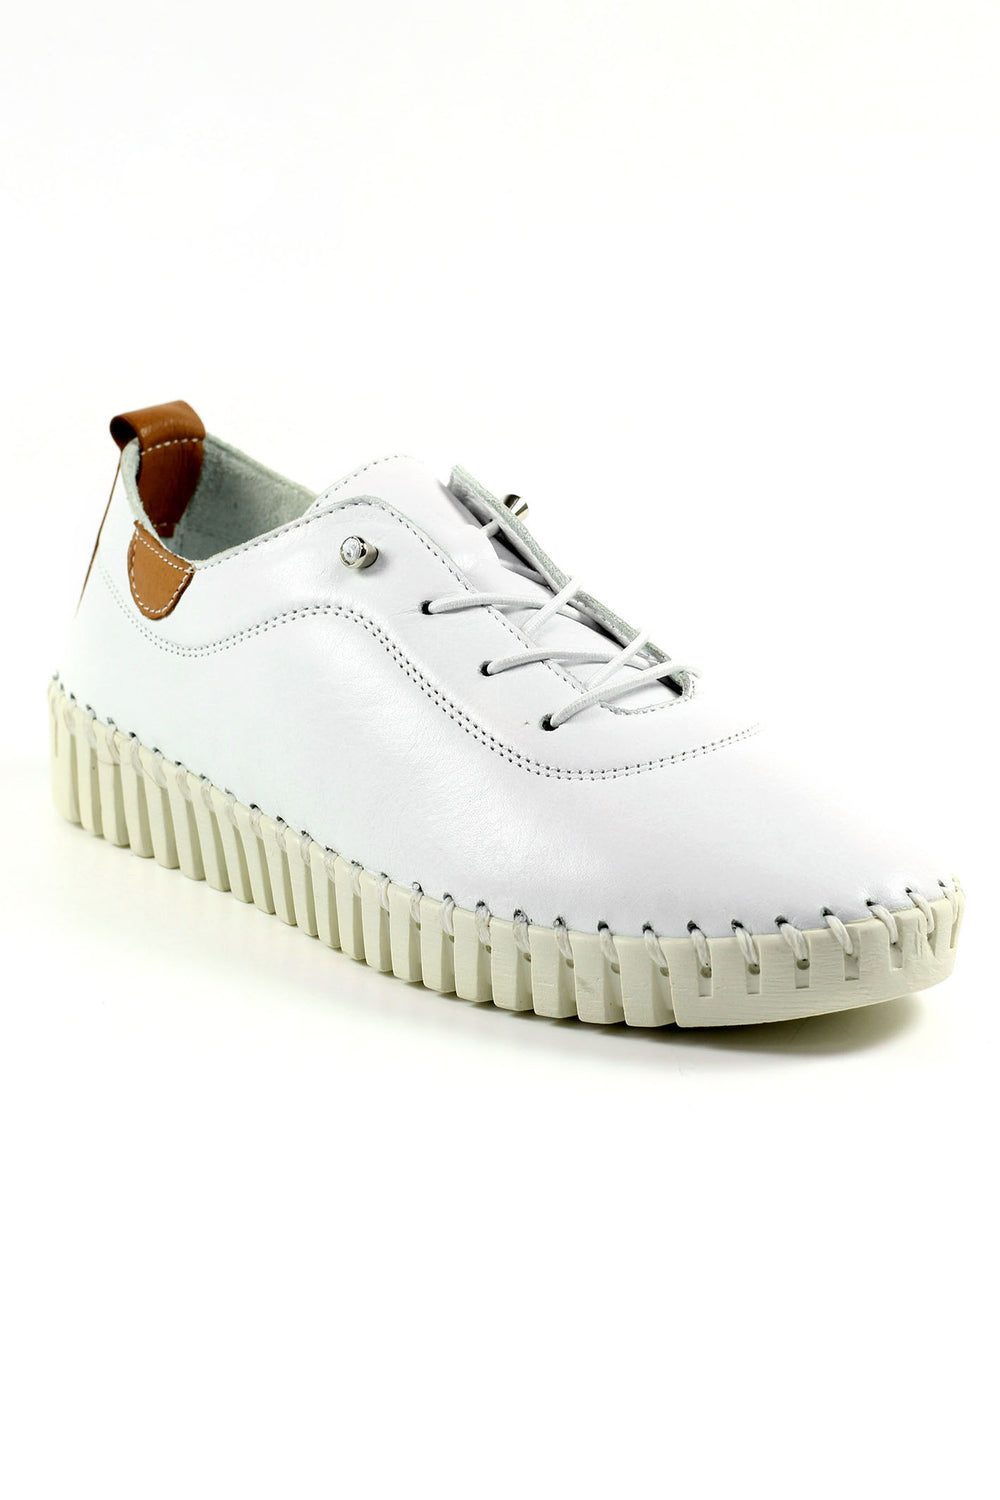 Lunar FLM011 White Flamborough Leather Shoes - Experience Boutique